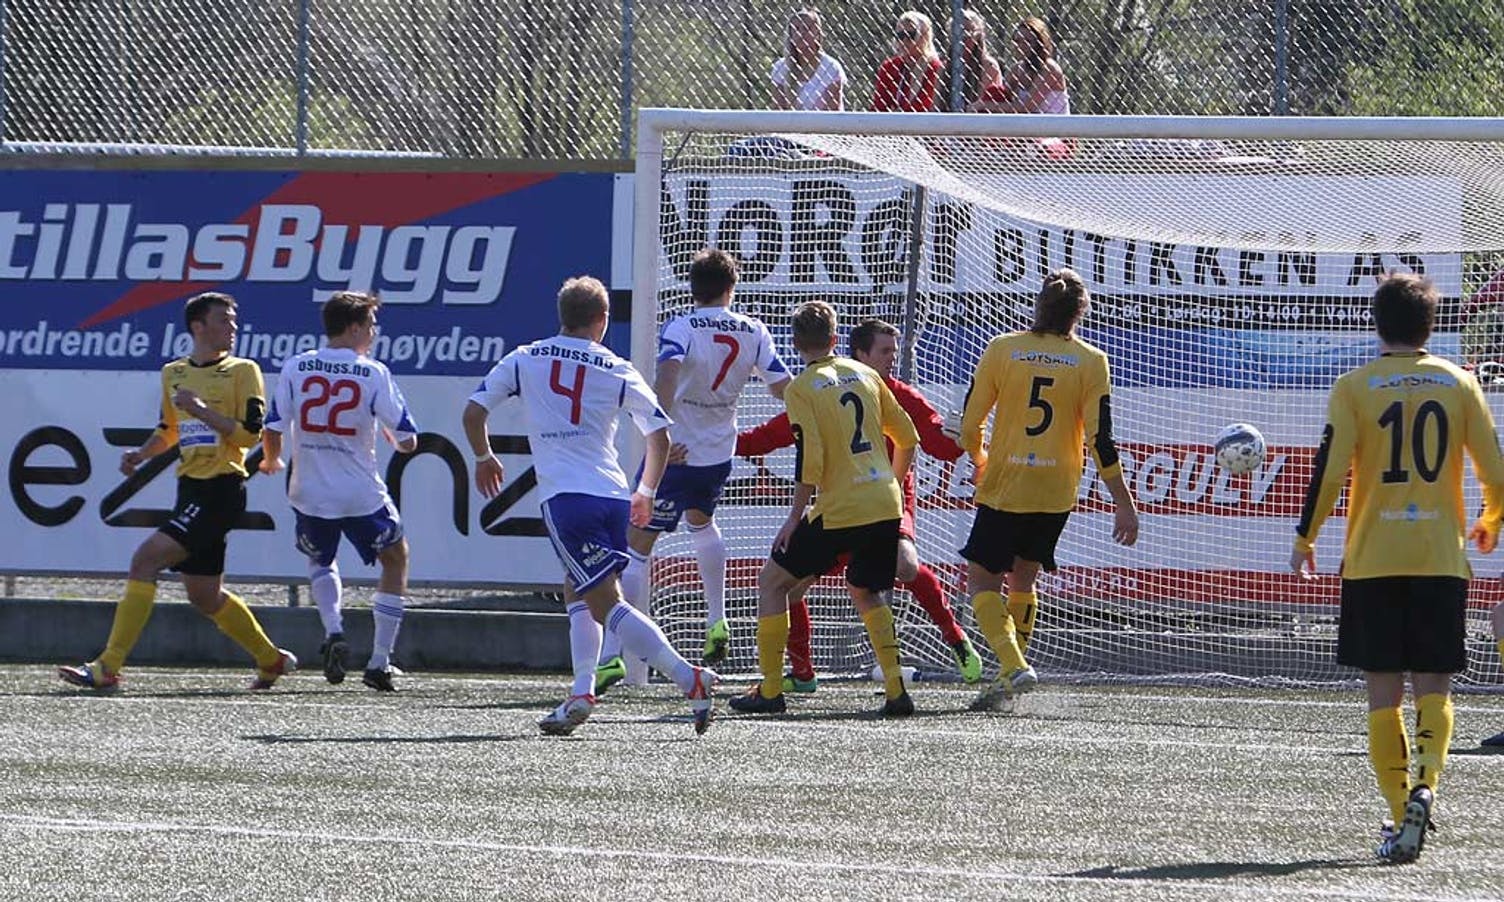 0-1 etter innlegg på frispark nær cornerflagget. (Foto: KVB)